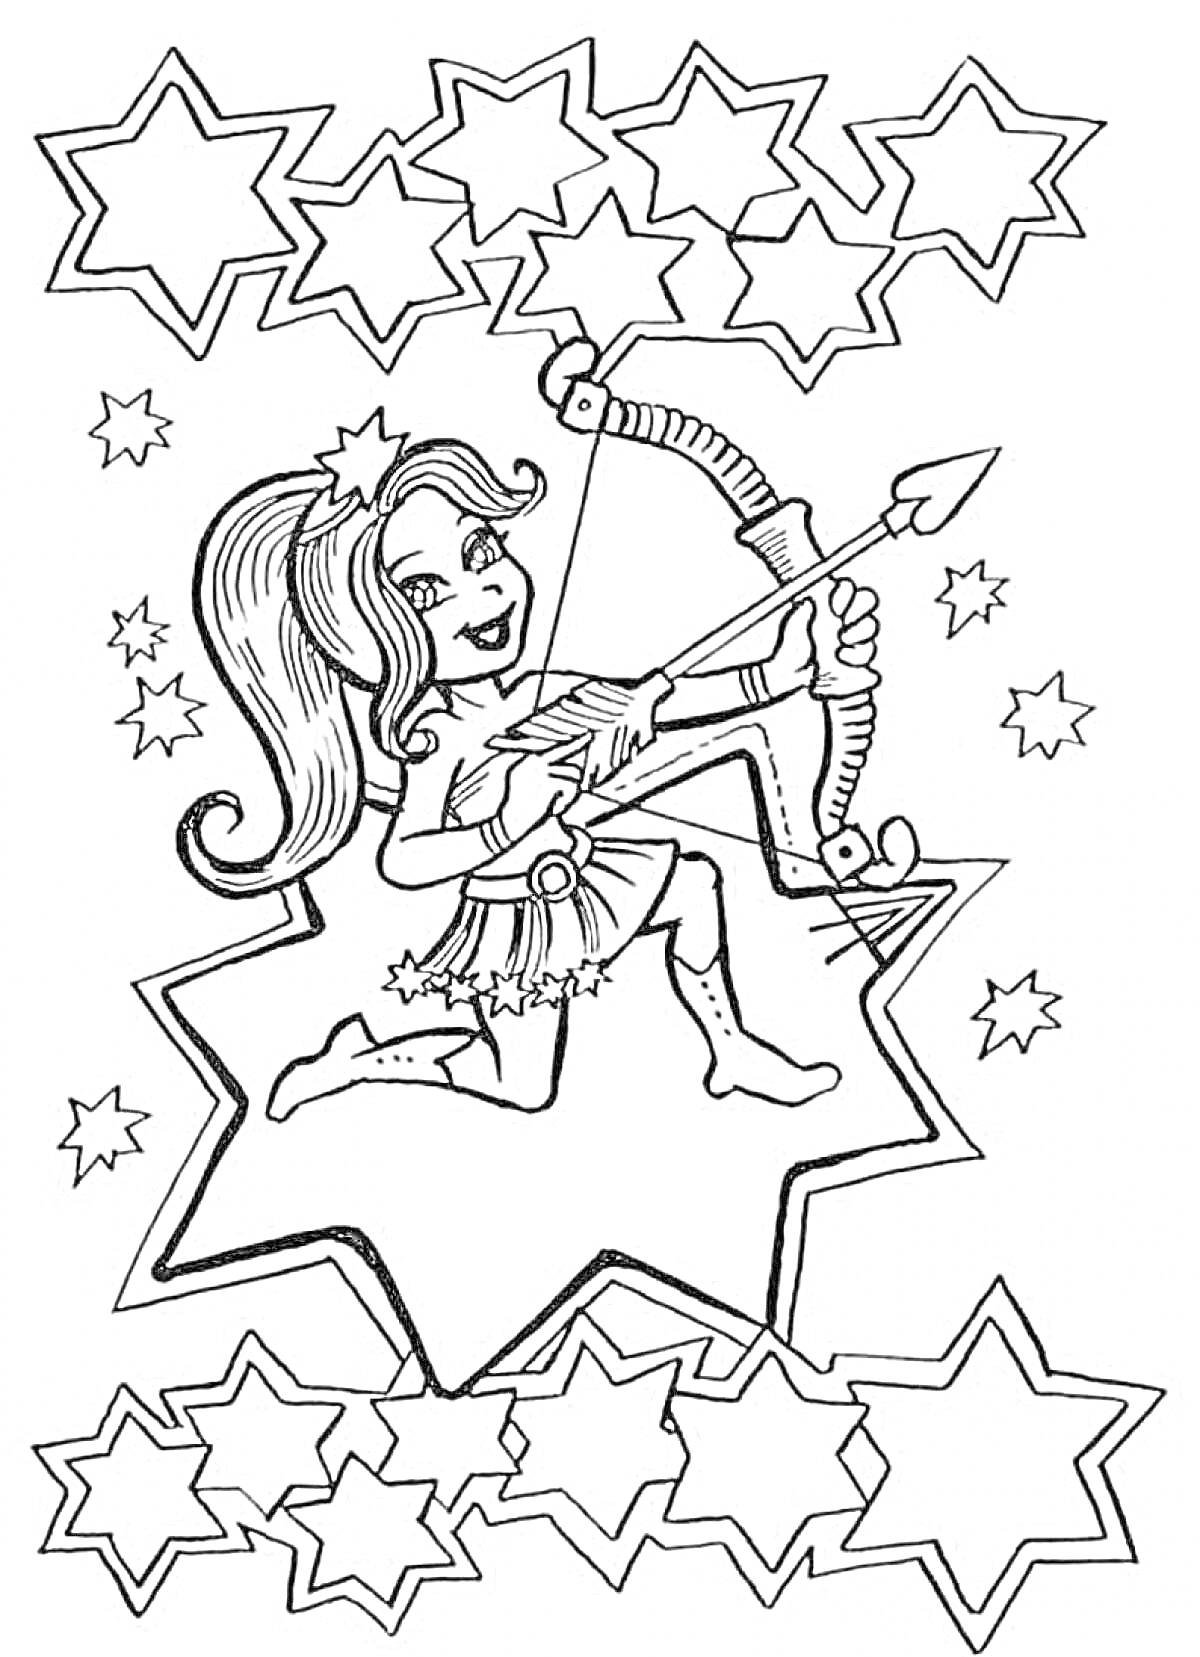 Раскраска Девочка-зодиакальный знак Стрелец с луком и стрелой на фоне звёзд